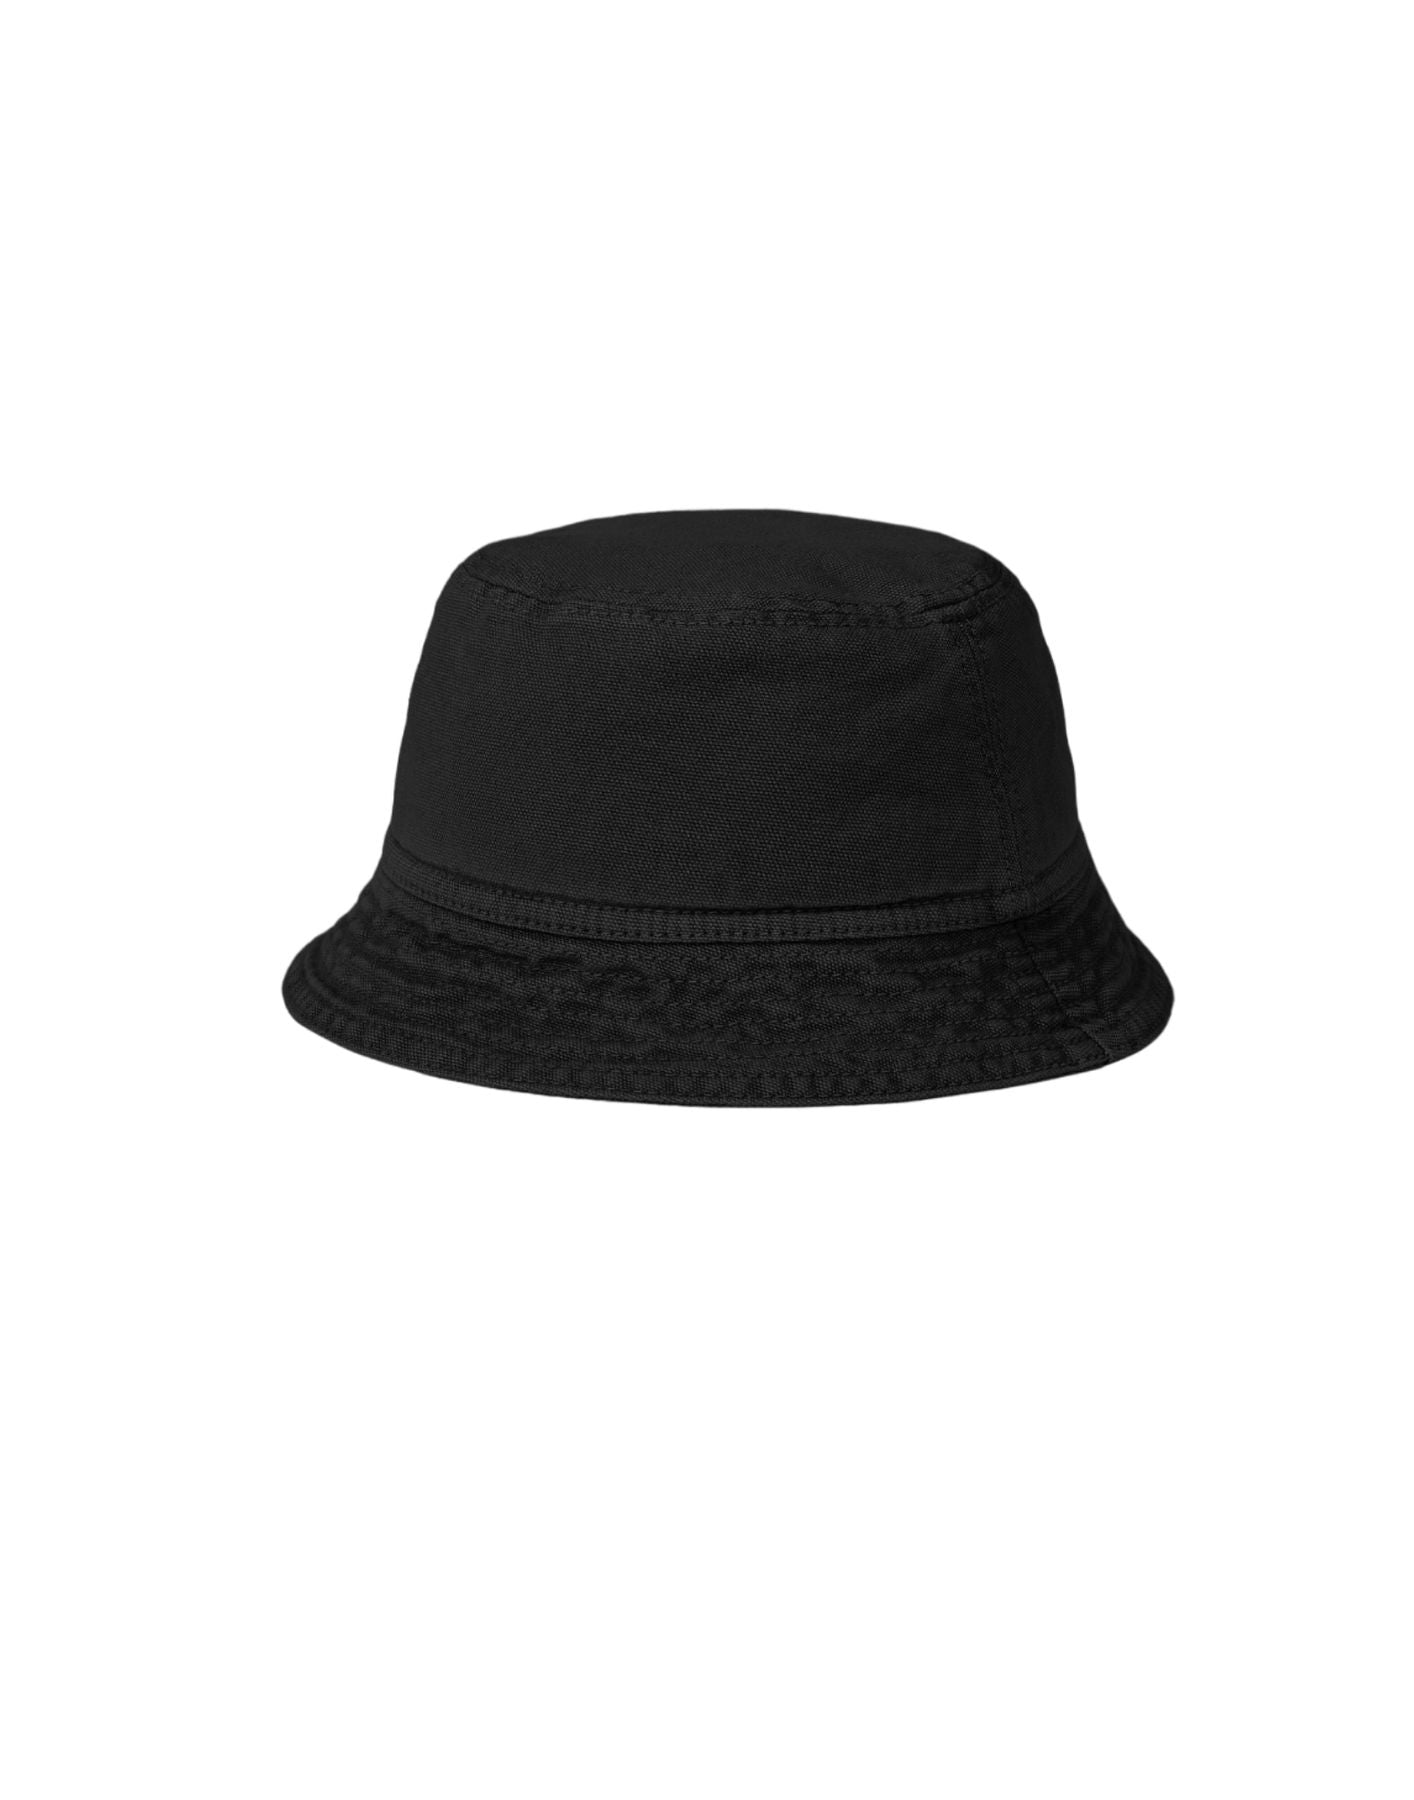 Sombrero para hombre I032938 NEGRO CARHARTT WIP